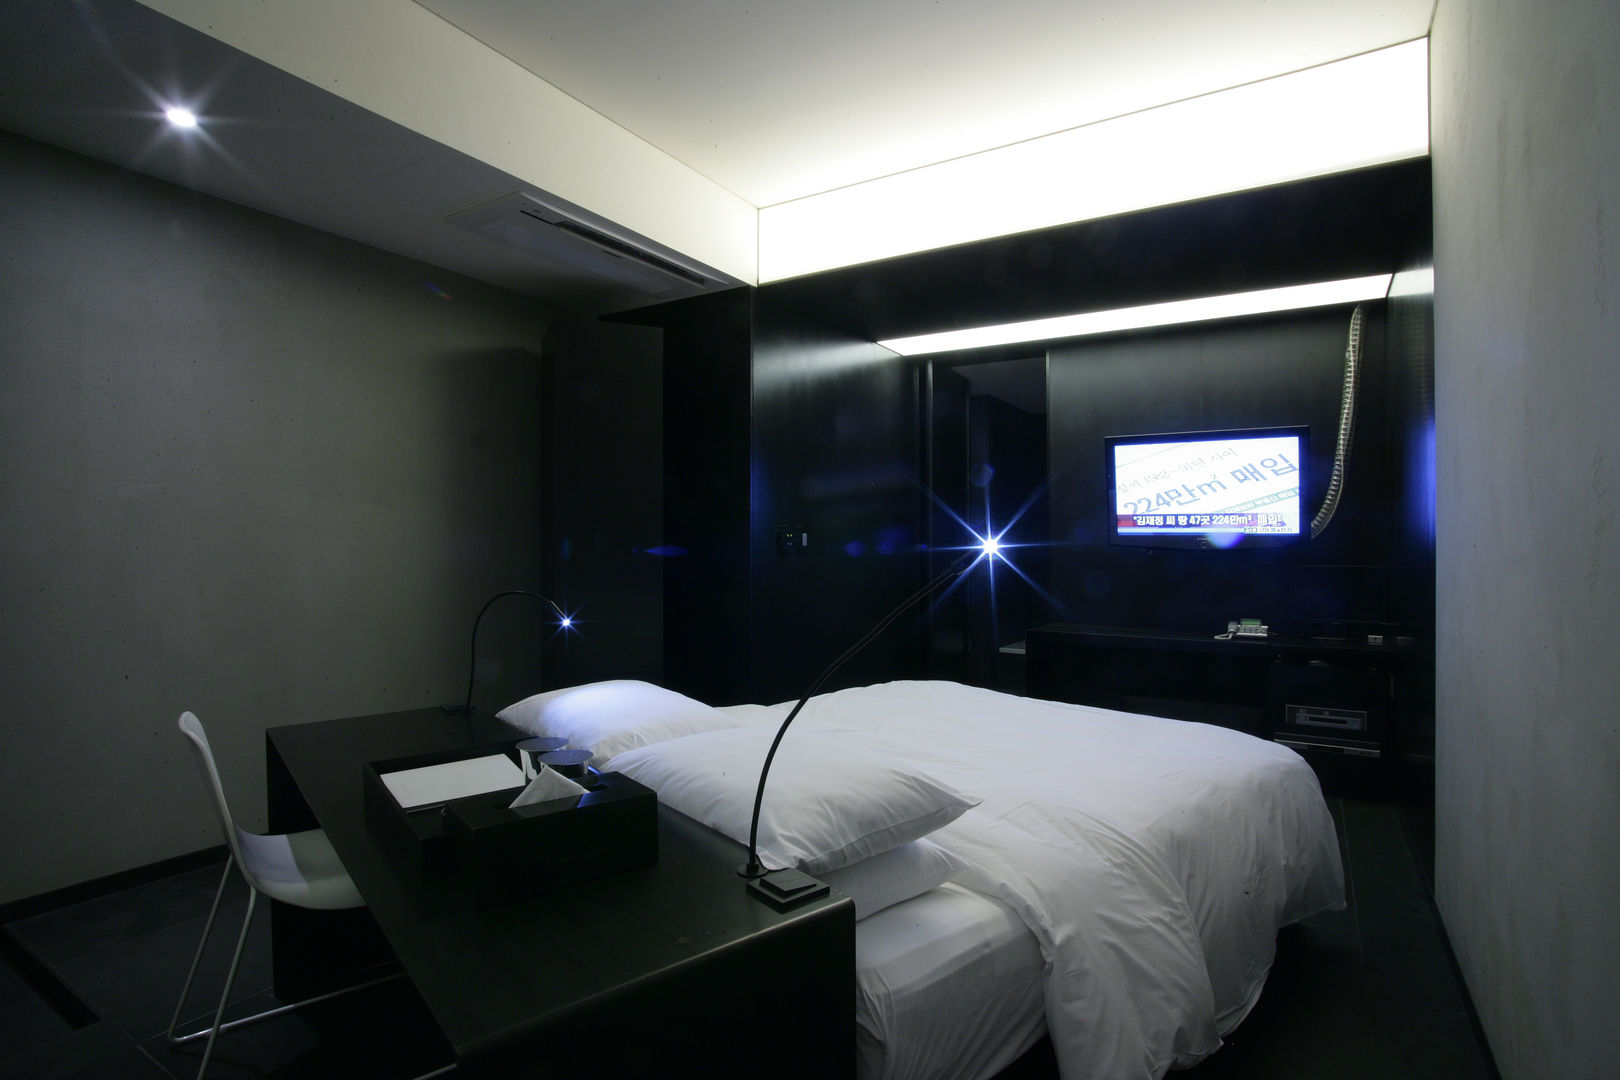 Hotel the mat (호텔 더매트), M's plan 엠스플랜 M's plan 엠스플랜 Minimalist bedroom